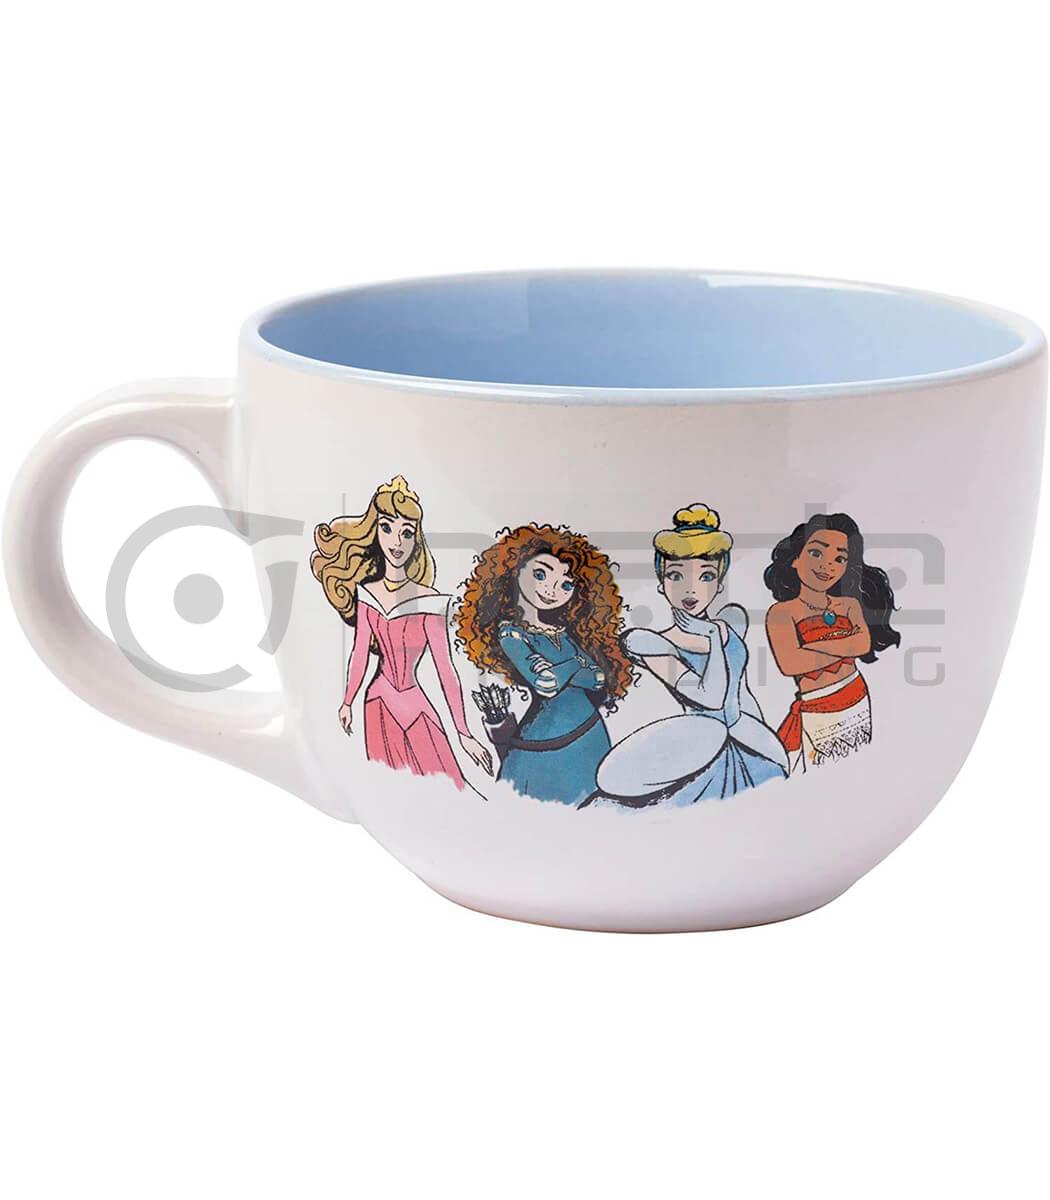 soup mug disney princess wsm007 c